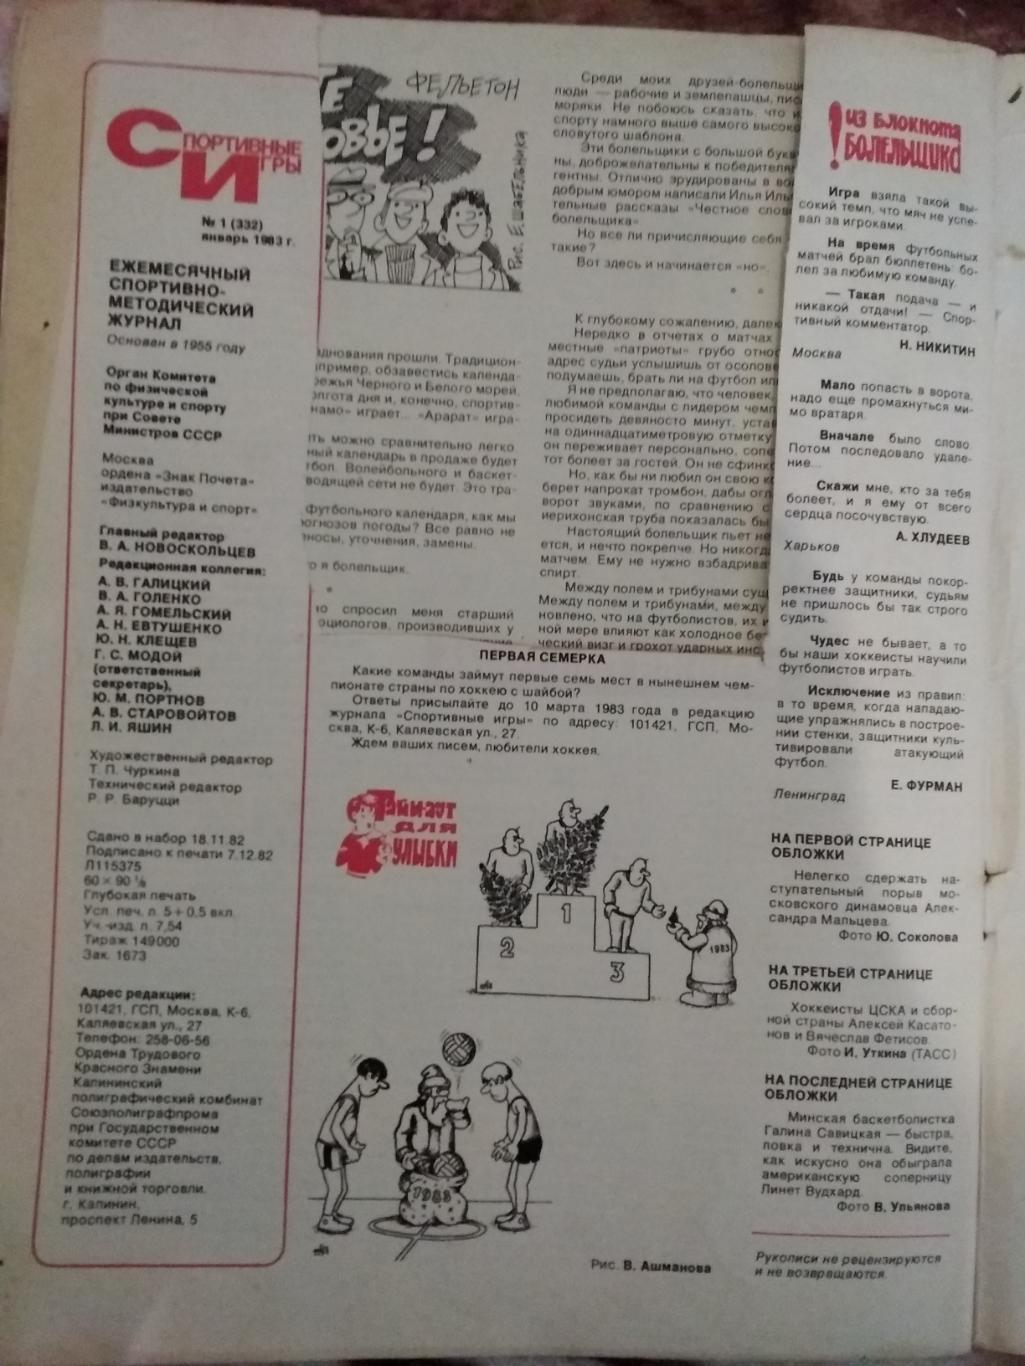 Журнал.Спортивные игры № 1 1983 г. 1